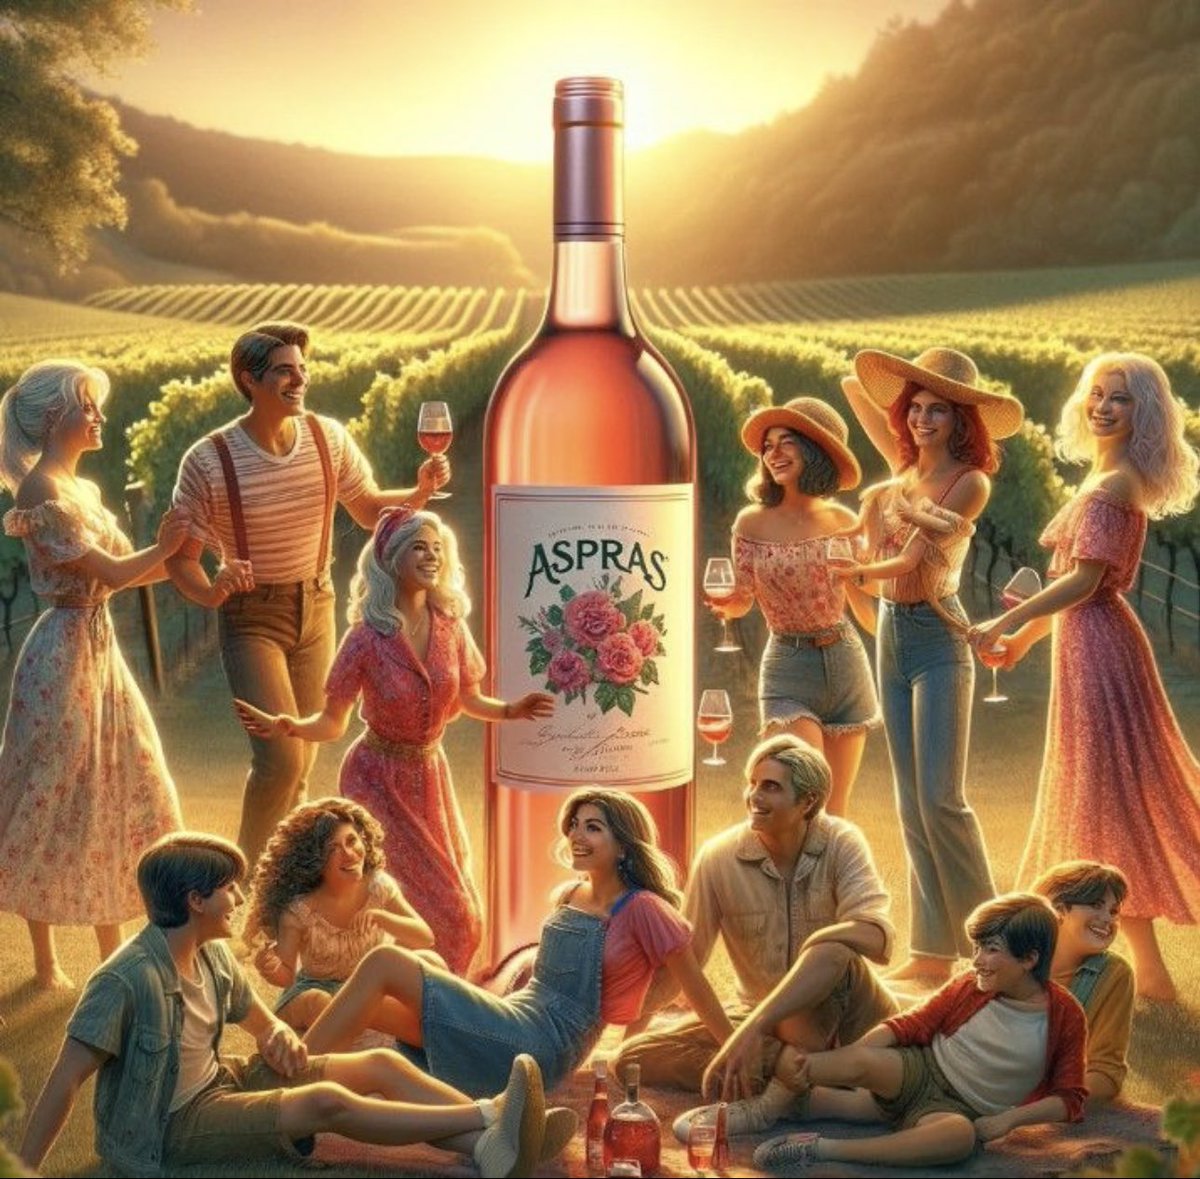 Mon coup de cœur vin rosé pour la saison #Aspras 
#albconsultingluxe